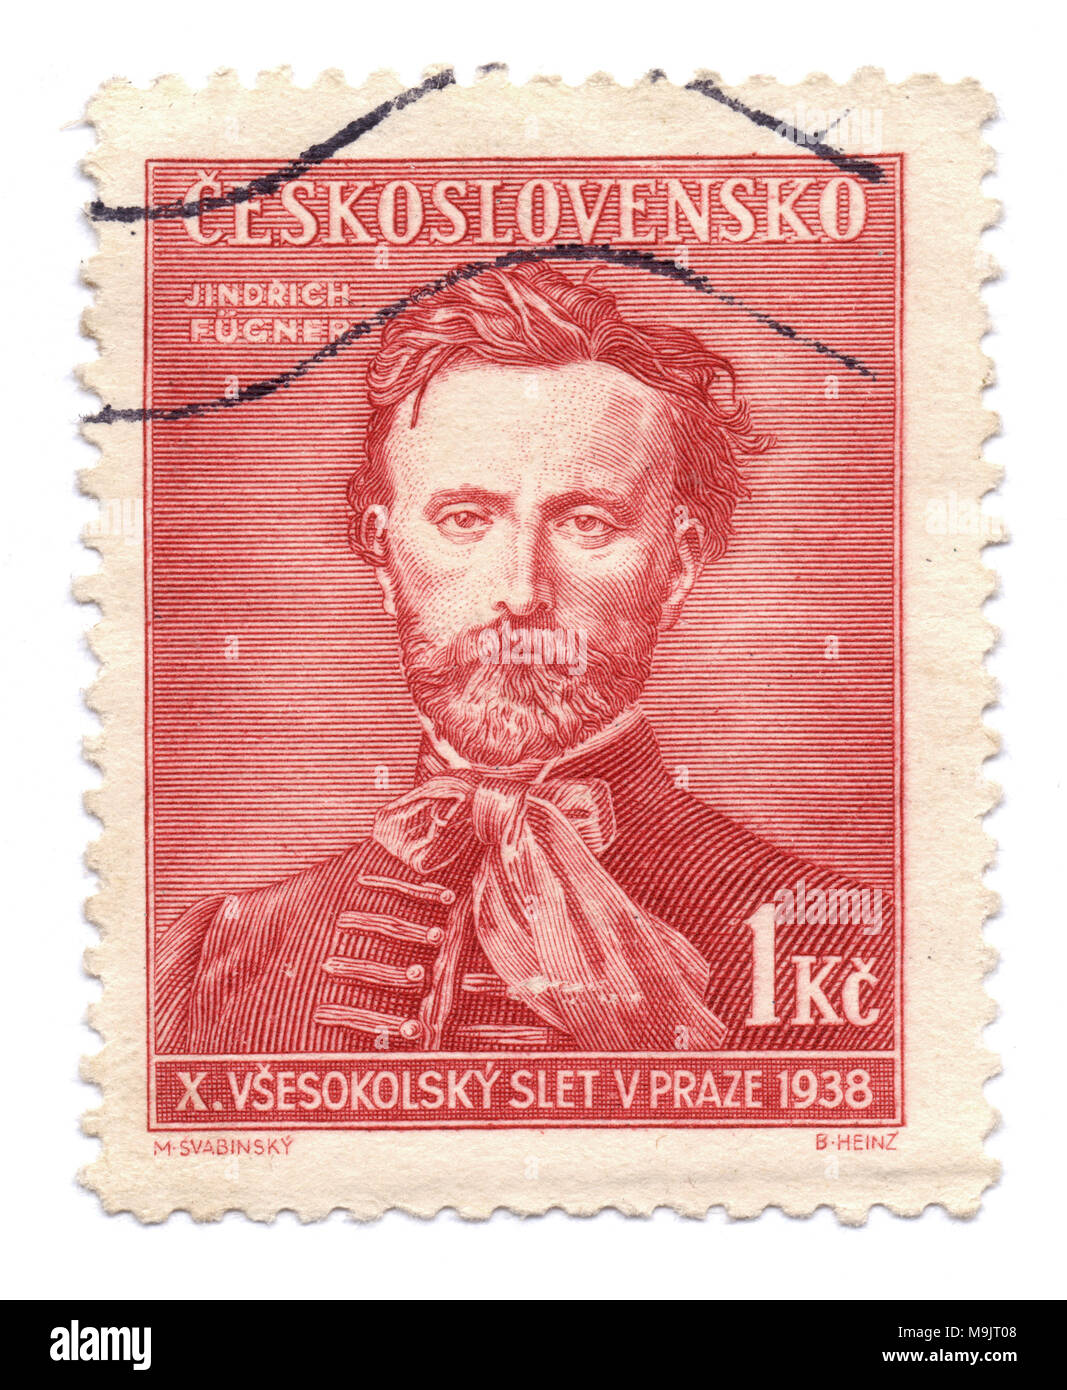 Jindrich Fügner, co-fondateur de mouvement Sokol, le timbre-poste, imprimé à Prague, Tchécoslovaquie (maintenant en République tchèque) vers 1938 Banque D'Images